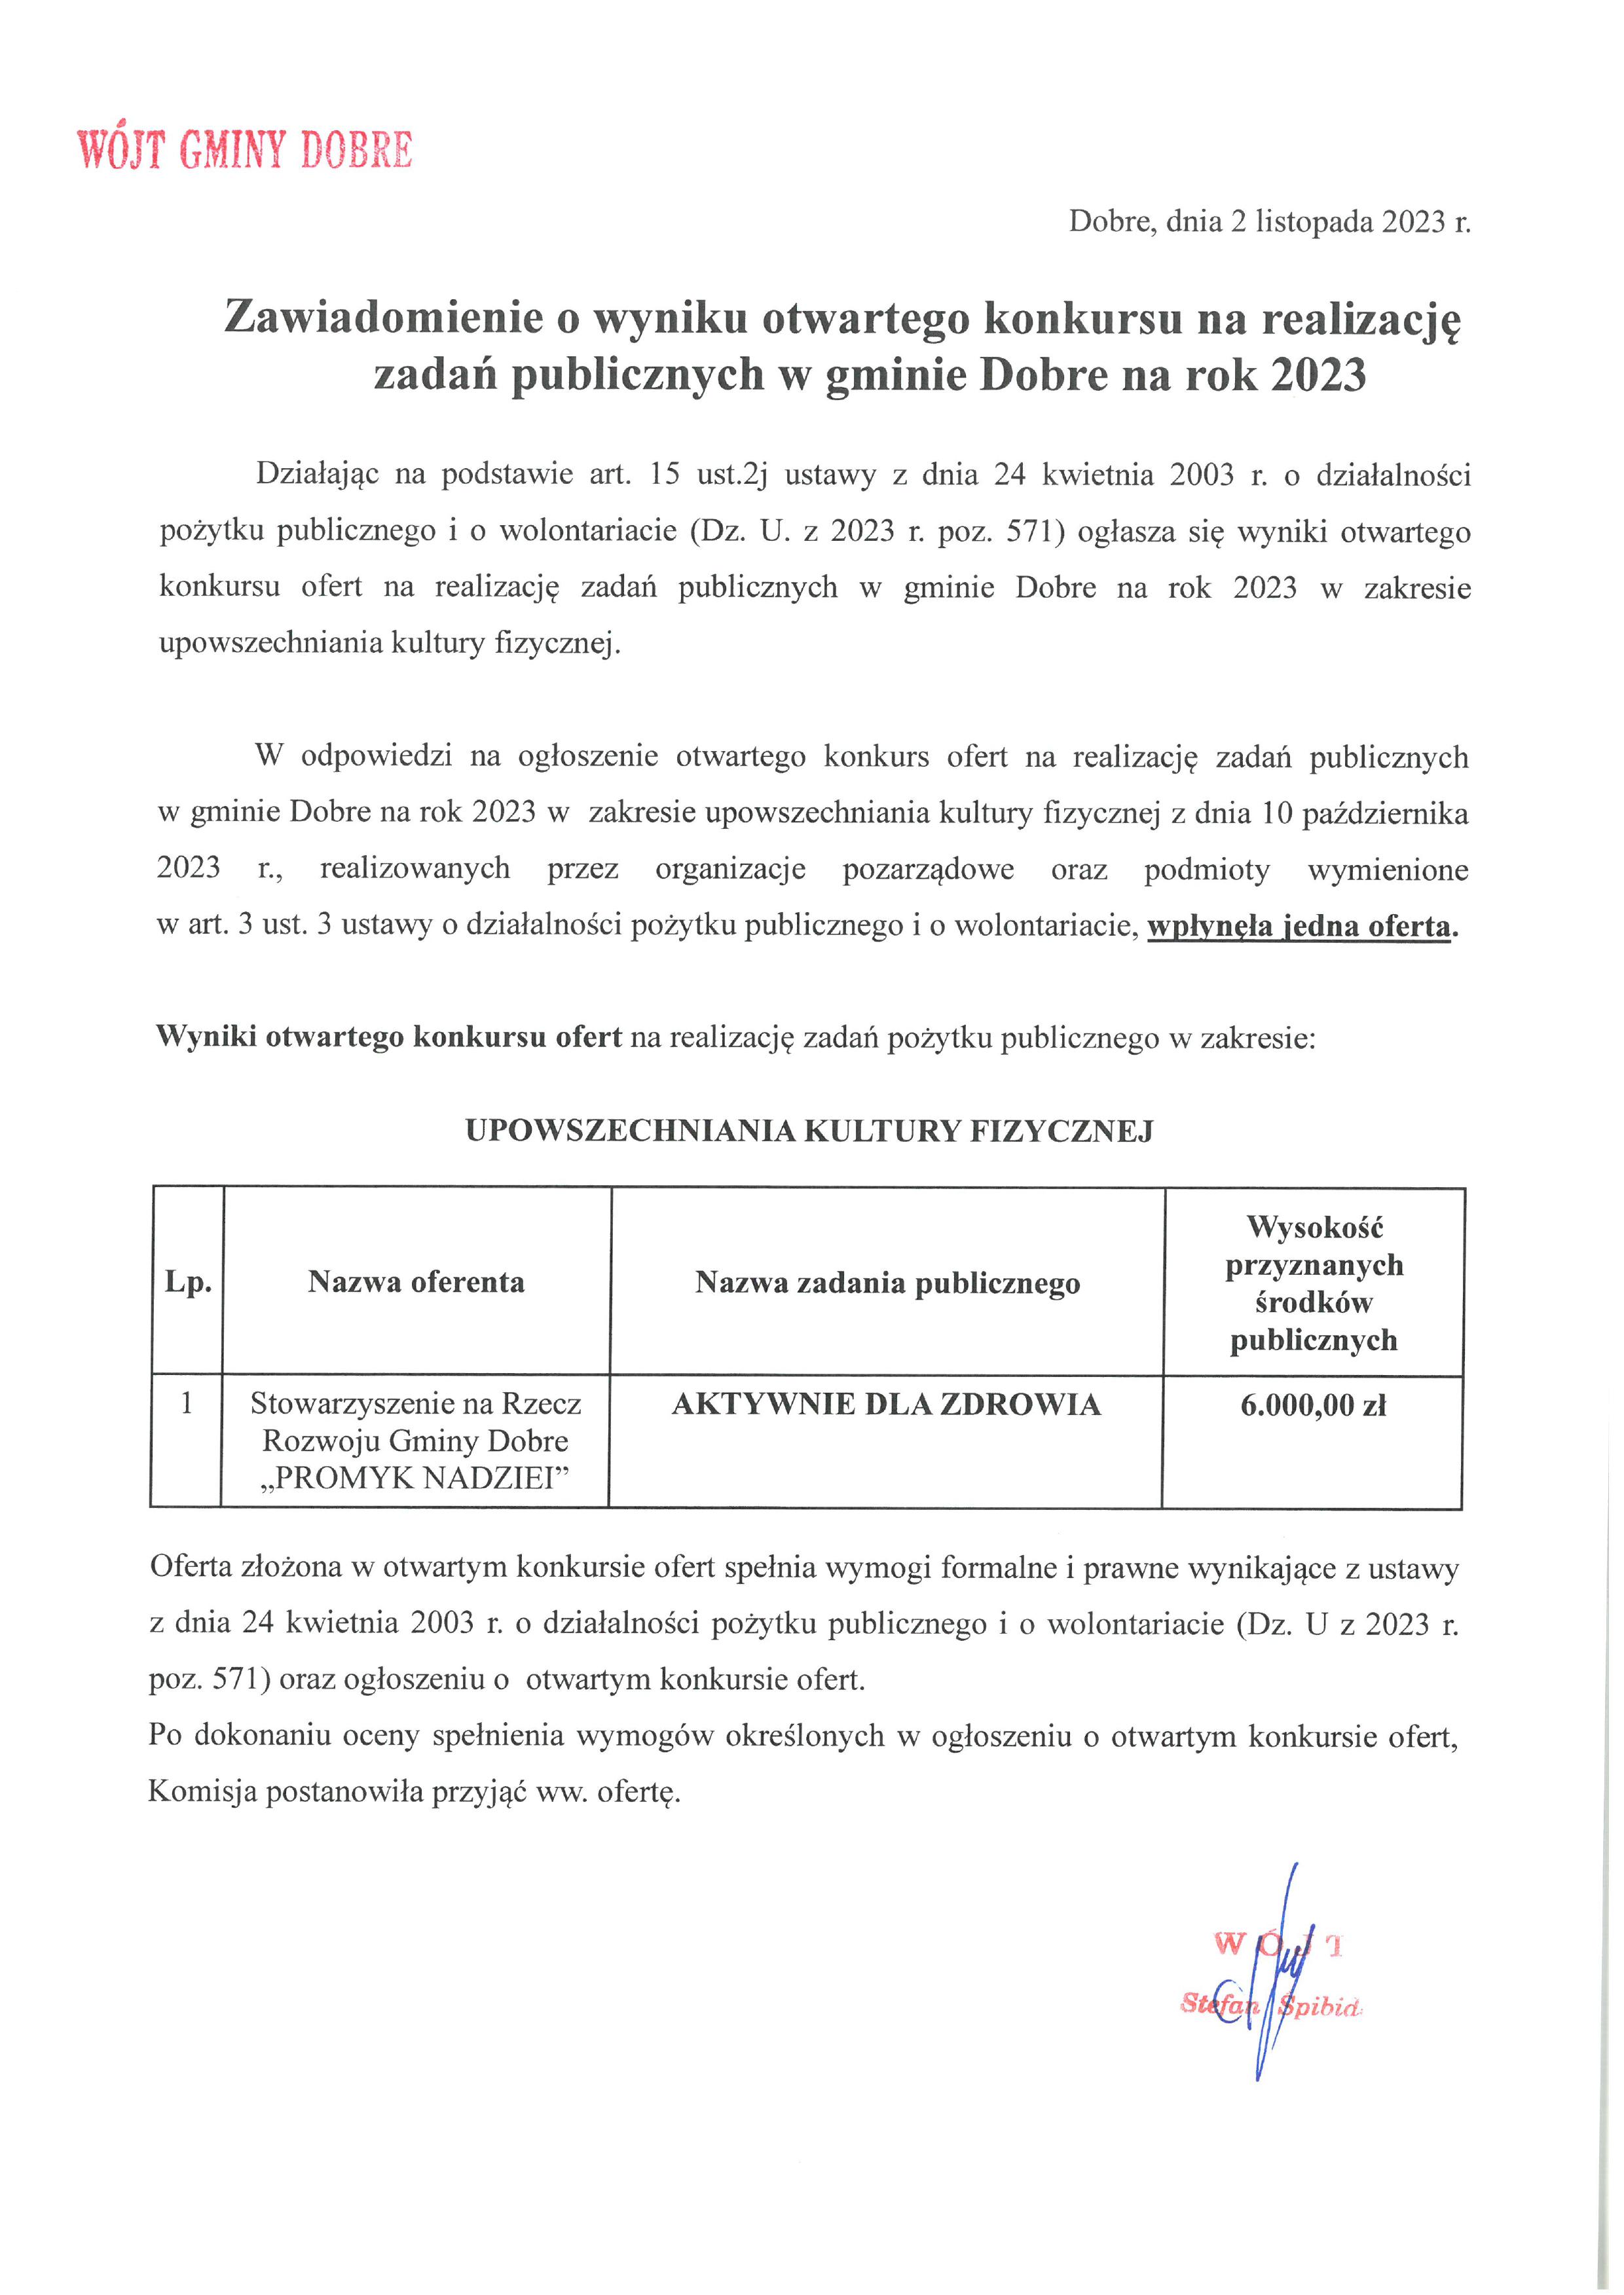 Zawiadomienie o wyniku otwartego konkursu na realizację zadań publicznych w Gminie Dobre na rok 2023.jpg (534 KB)